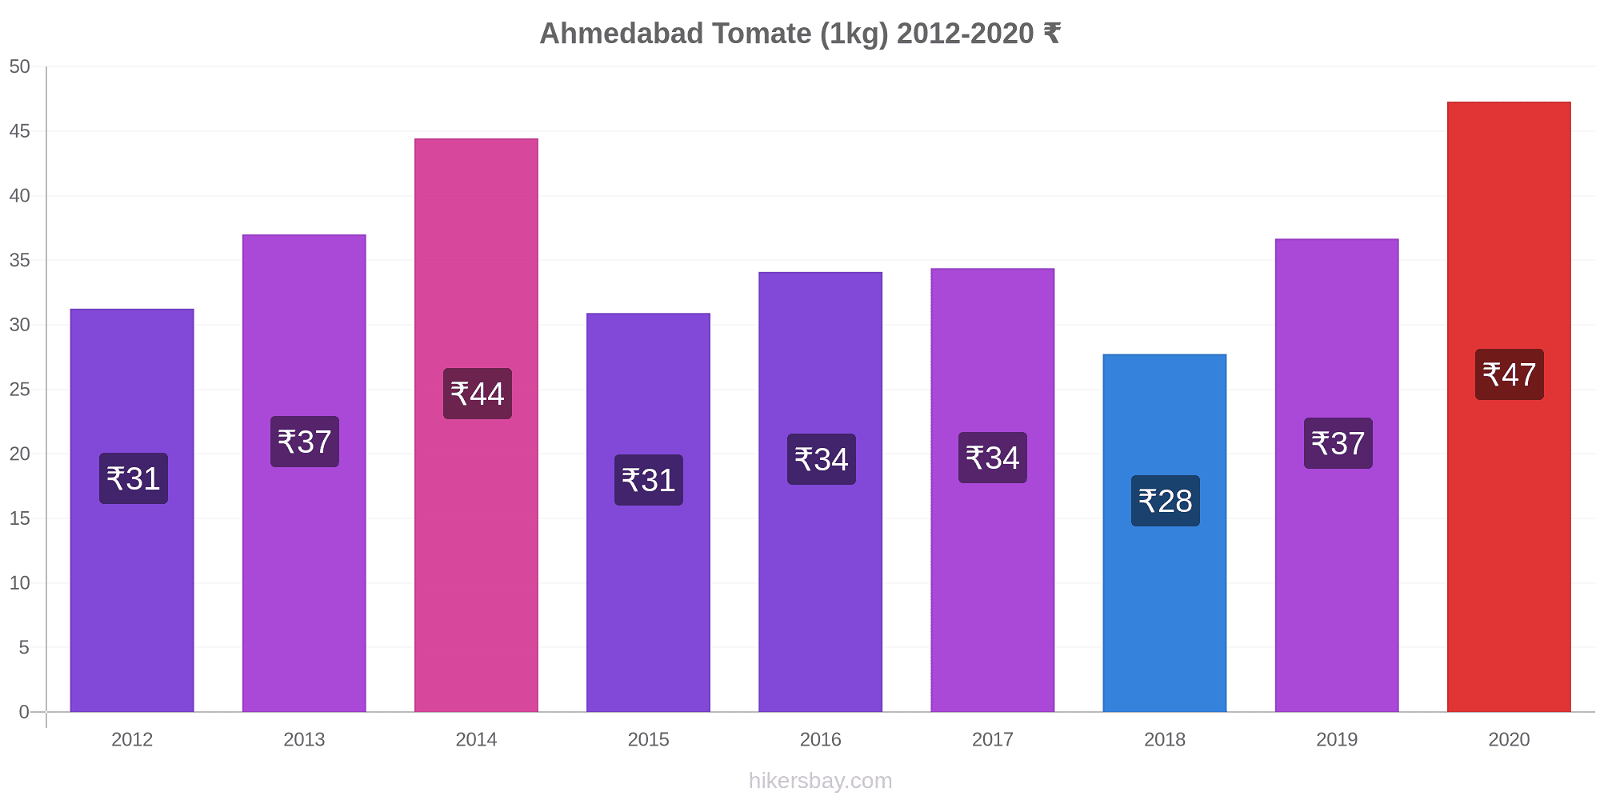 Ahmedabad variação de preço Tomate (1kg) hikersbay.com